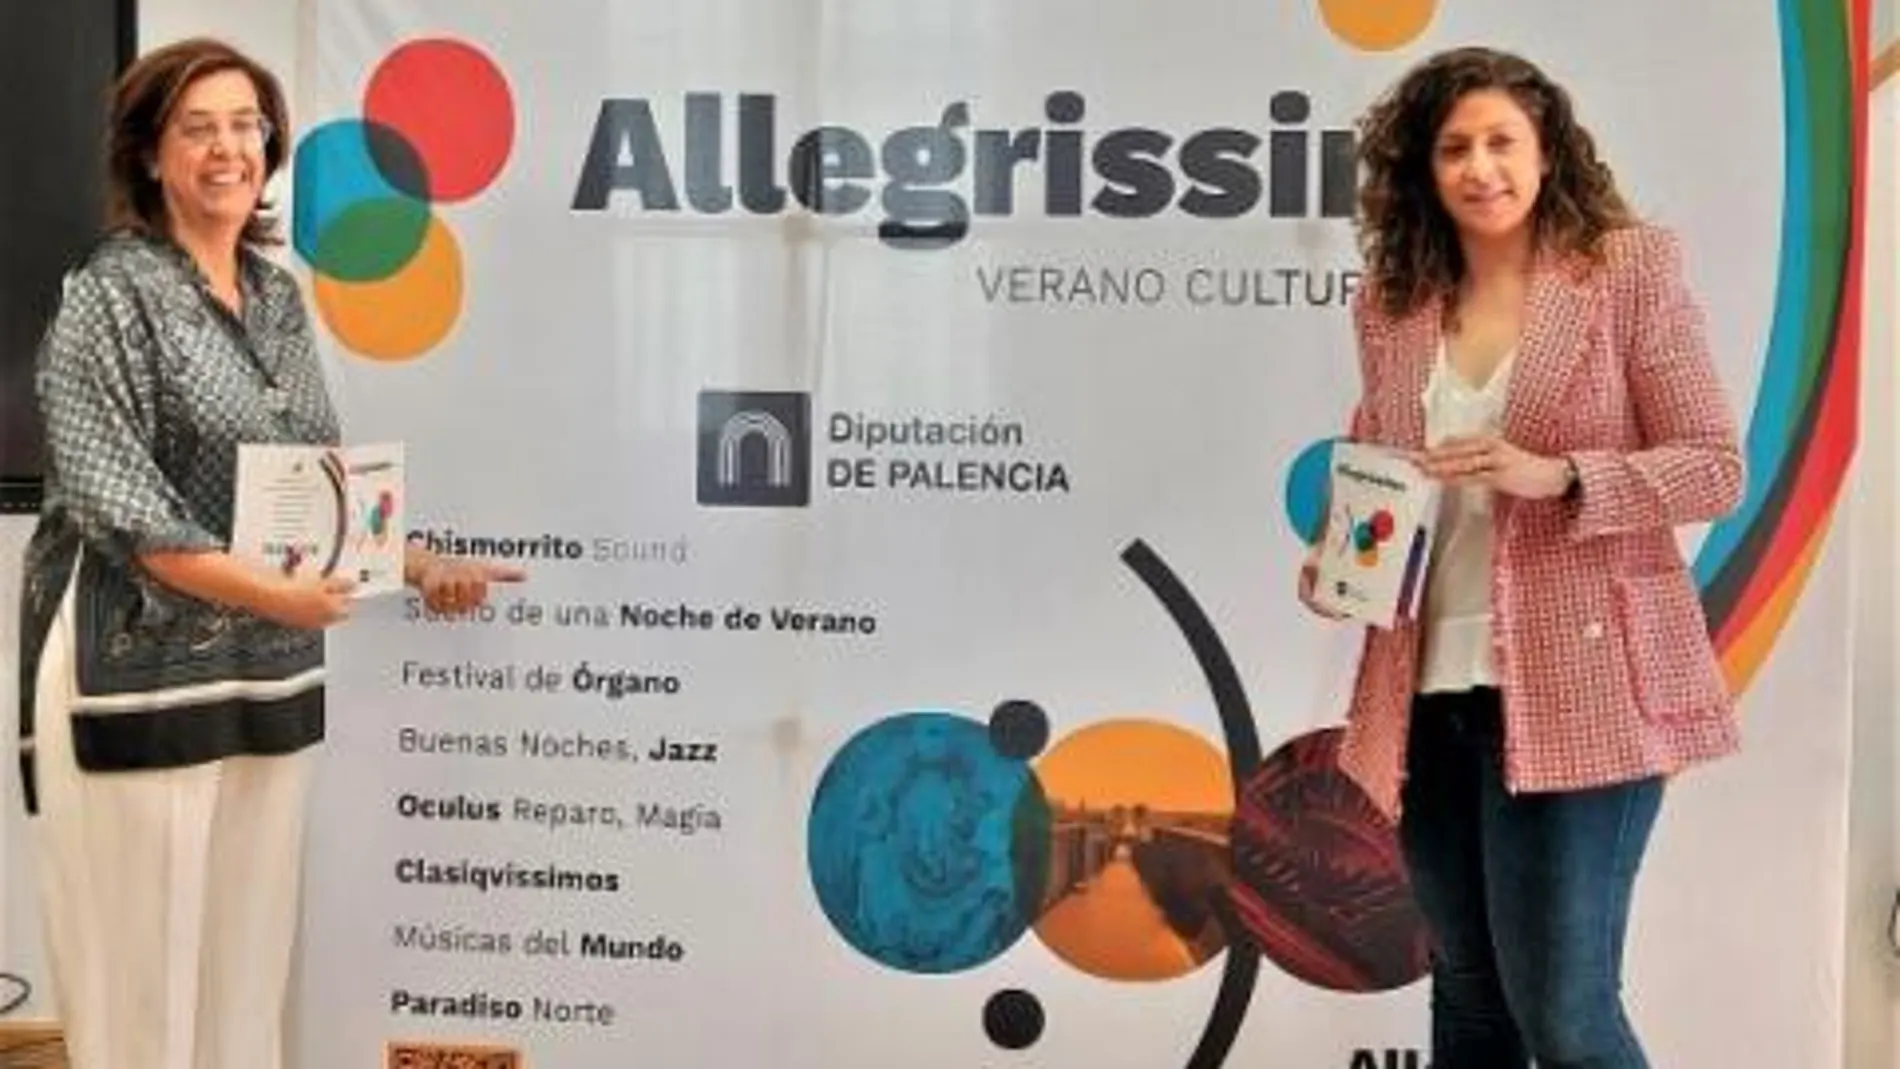 La presidenta de la Diputación de Palencia, Ángeles Armisén, y la diputada Carolina Valbuena presentan "Allegrissimo"